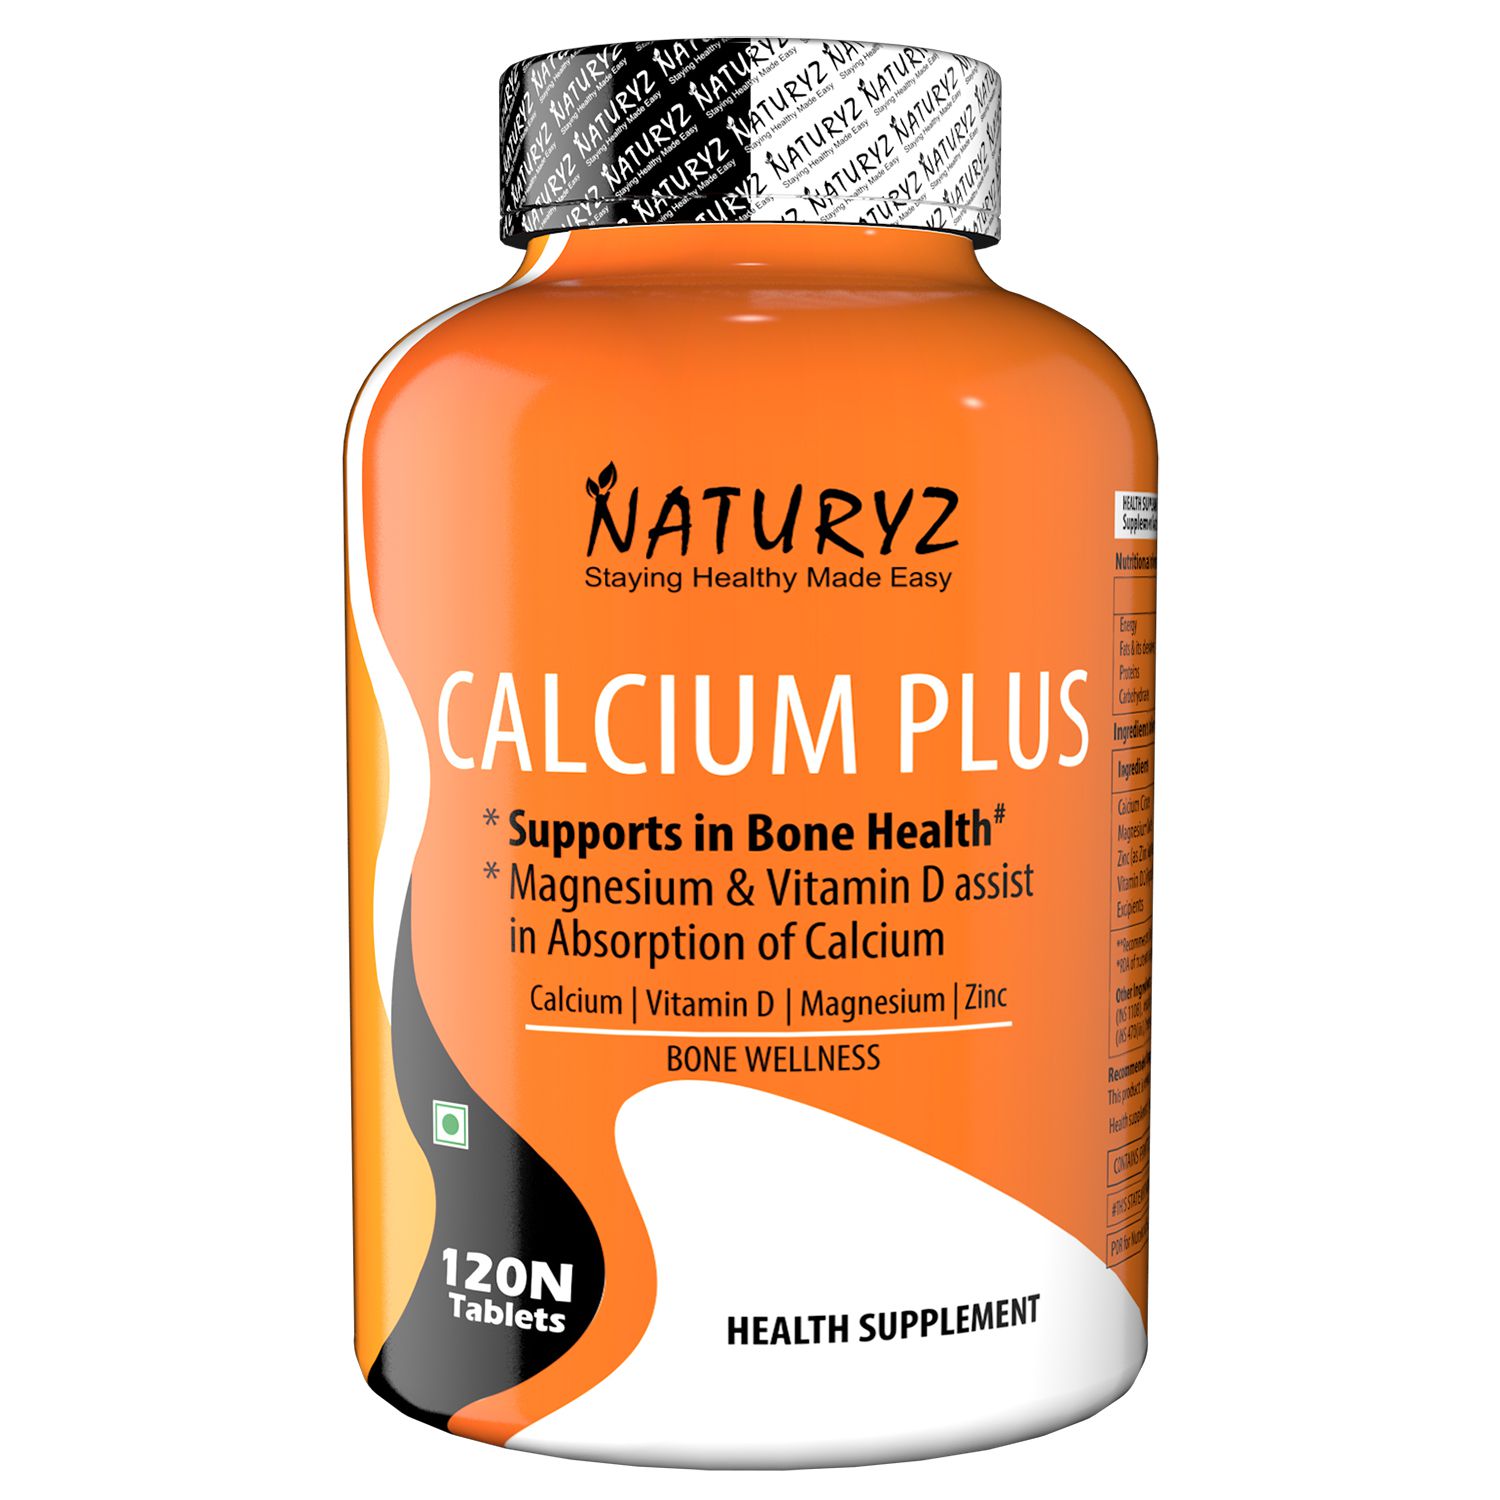     			NATURYZ Calcium Plus Formula With Vitamin D3, Zinc And Magnesium (120 Tablets)